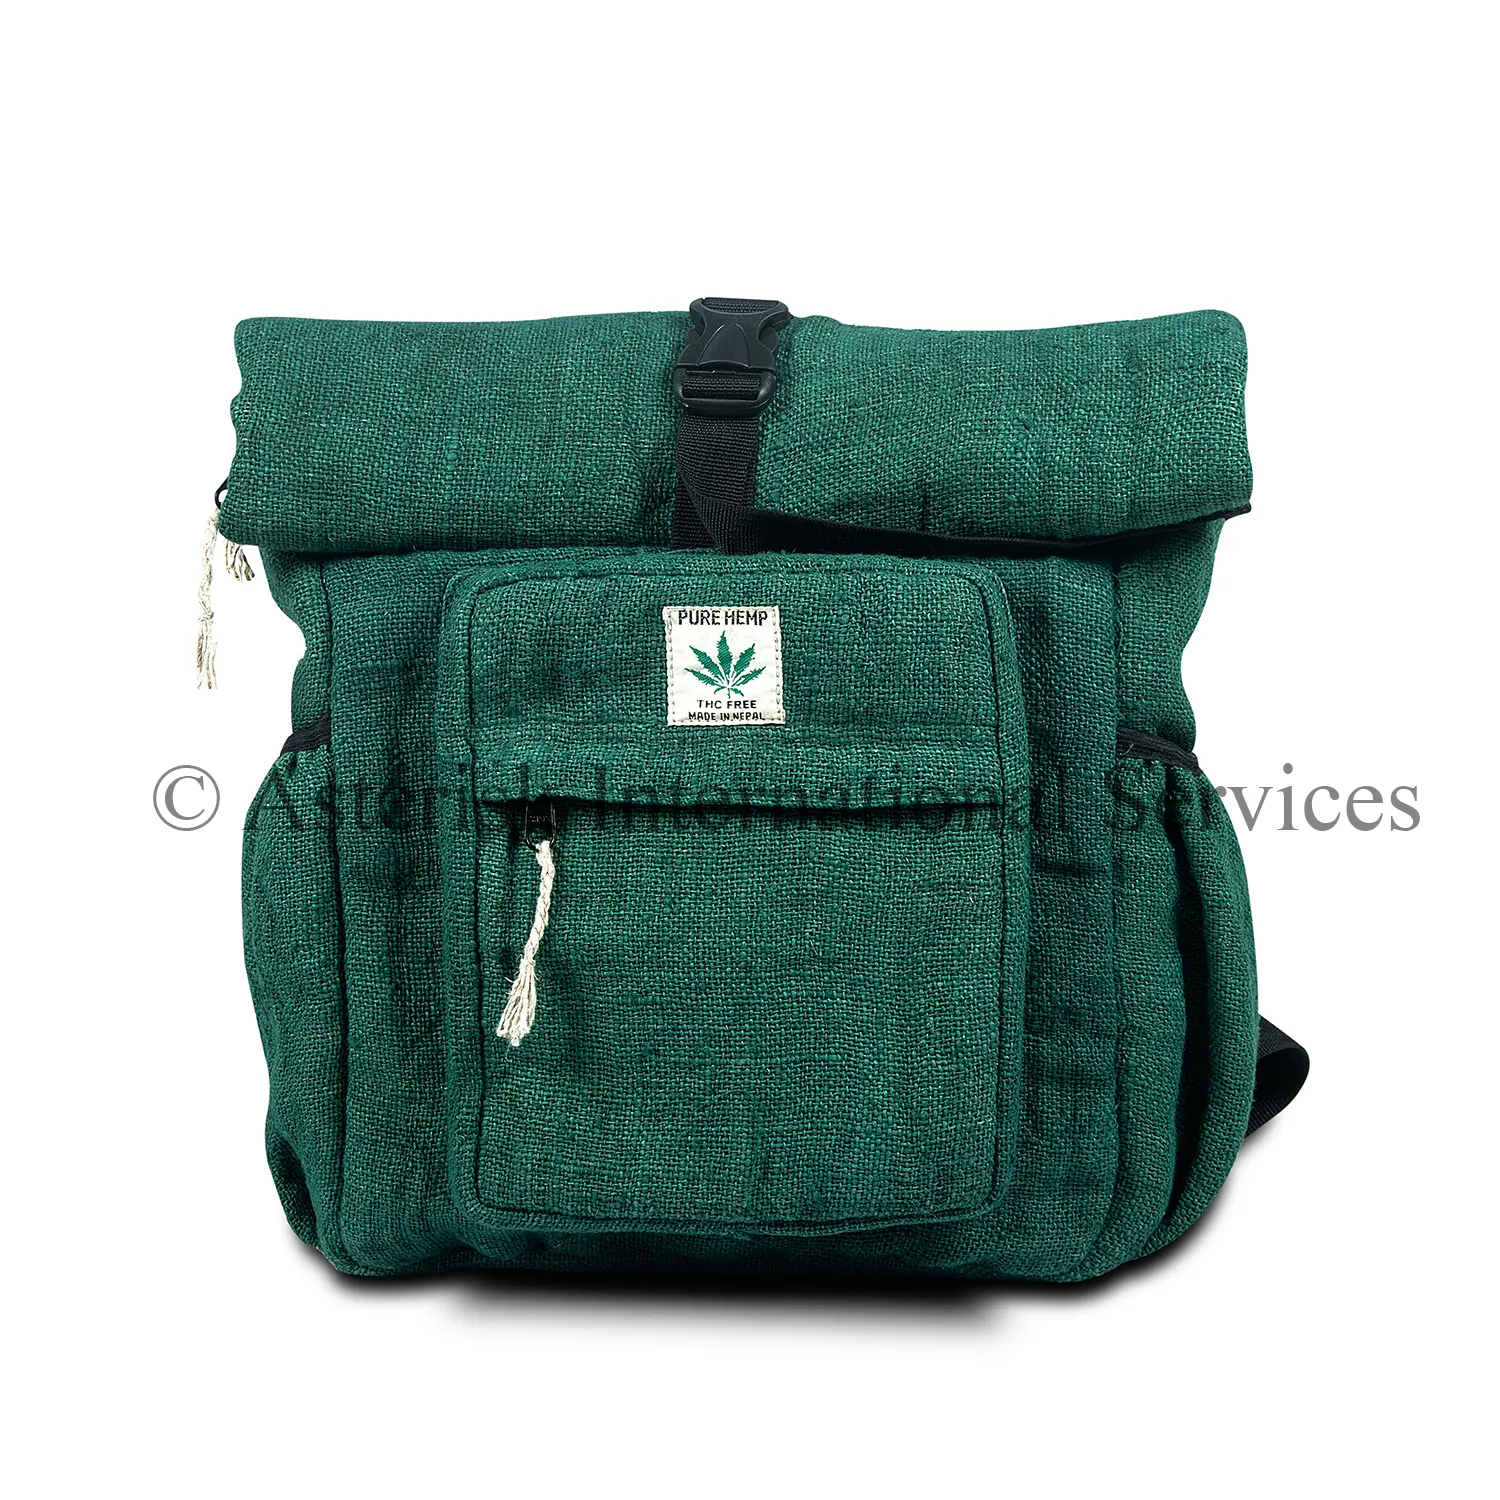 Gran capacidad de cáñamo mochila para viajes 100% puro Nepal cáñamo mochila vegano de la escuela y la Universidad de hombro de cáñamo bolsa